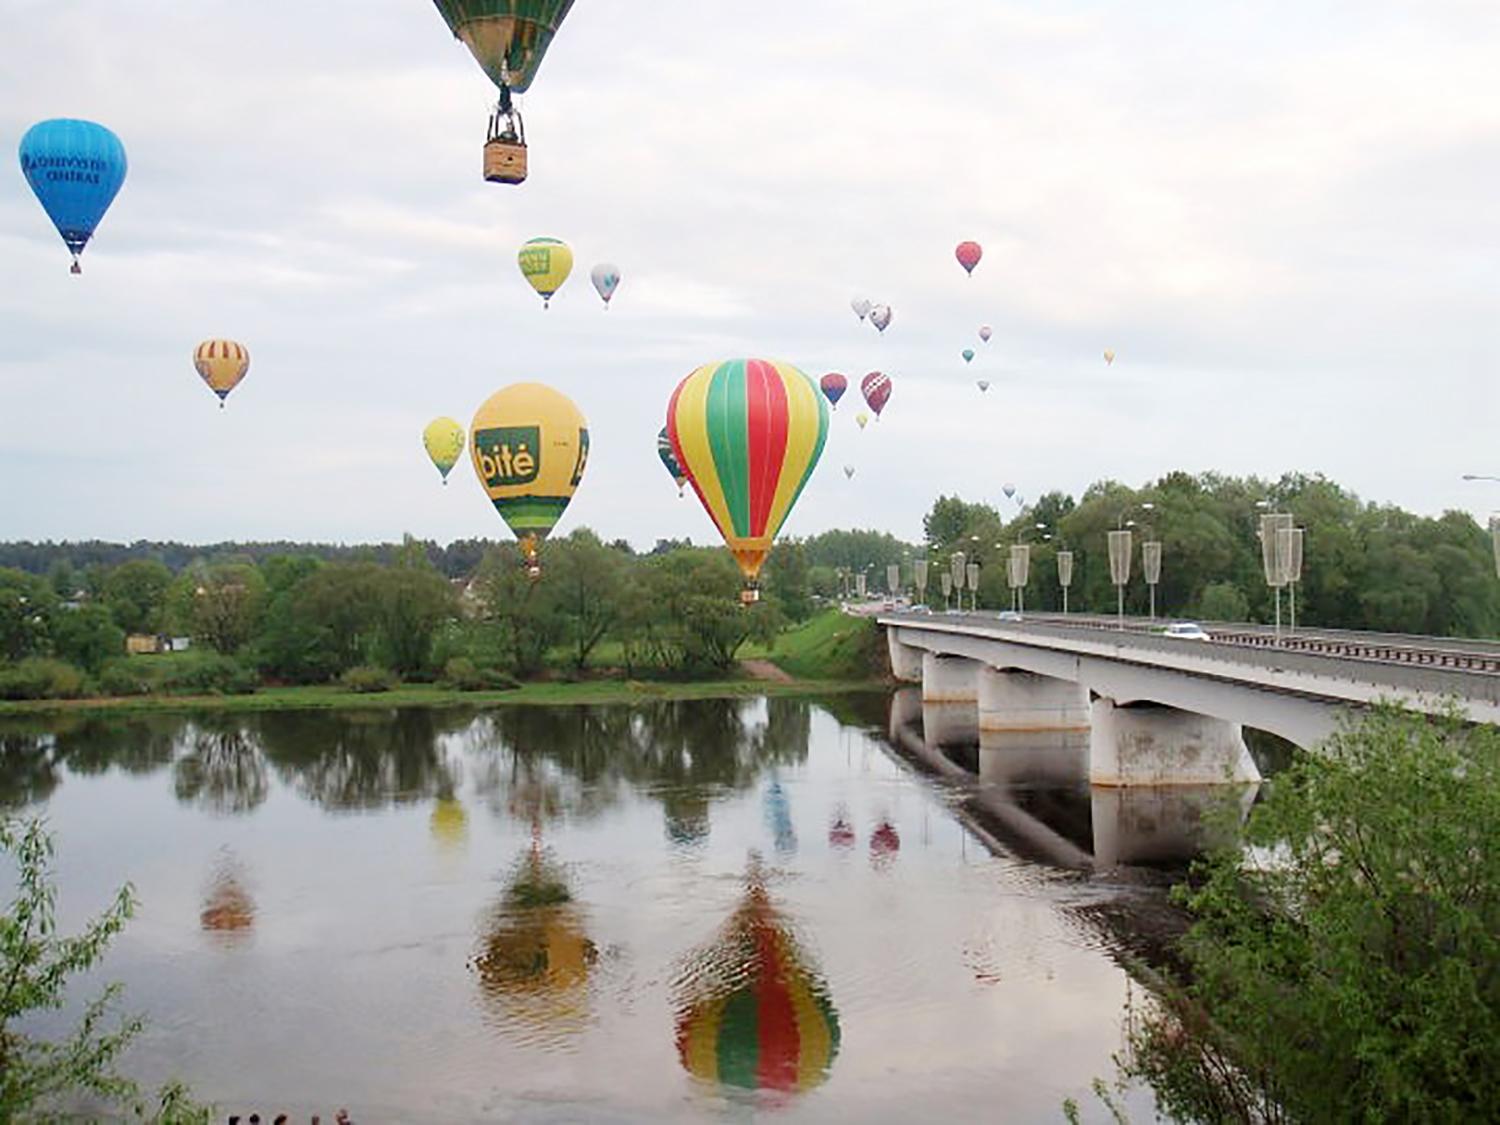 Ukmergės padangę nuspalvins oro balionai / Oro balionai – aristokratiškas užsiėmimas